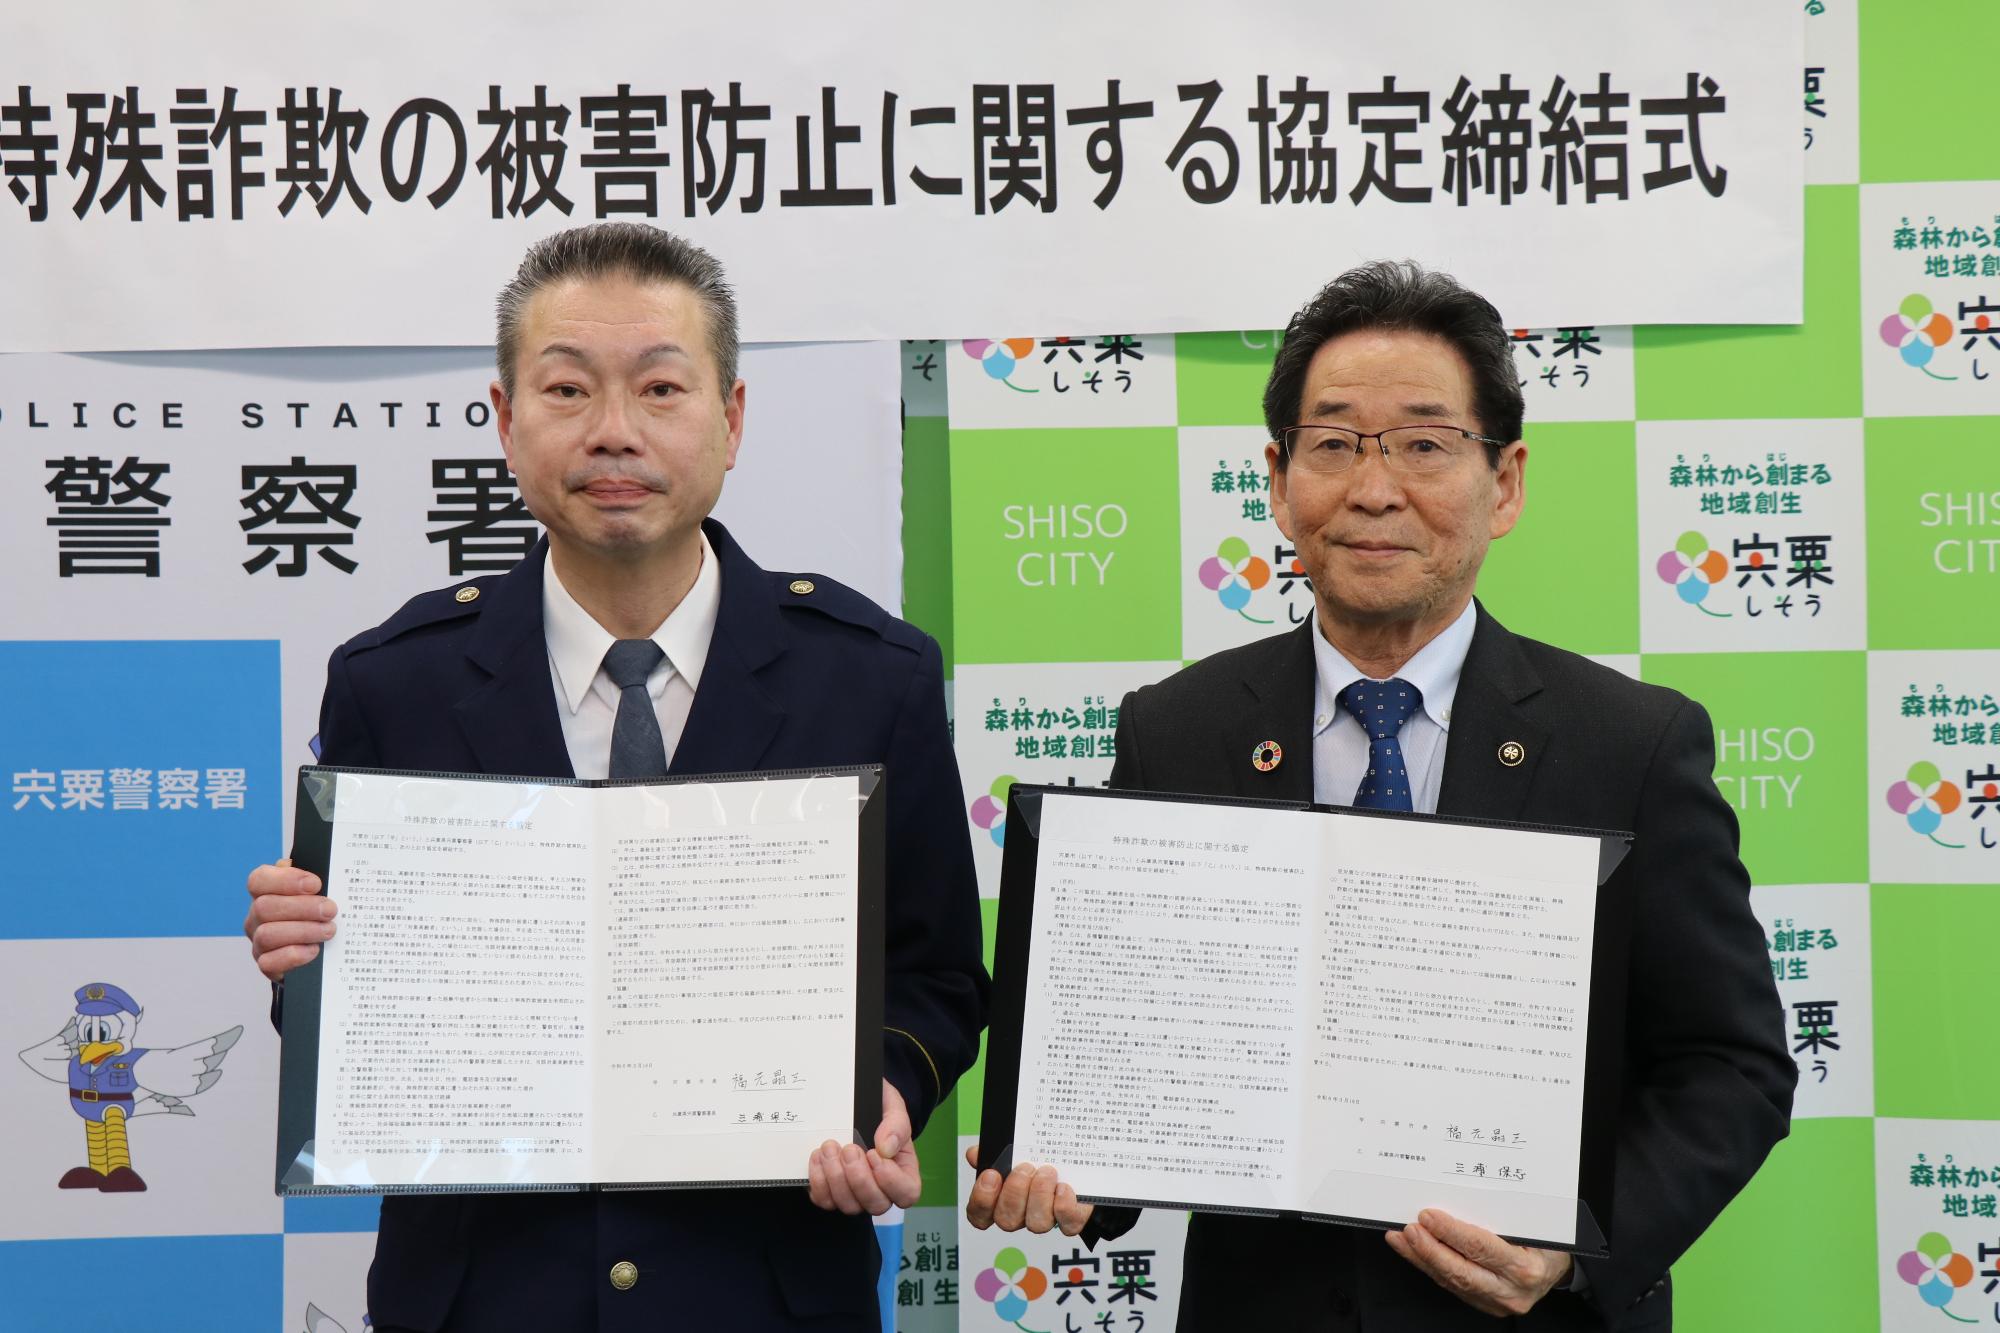 宍粟警察の三浦署長と福元市長が締結した協定書をもって並んでいる写真